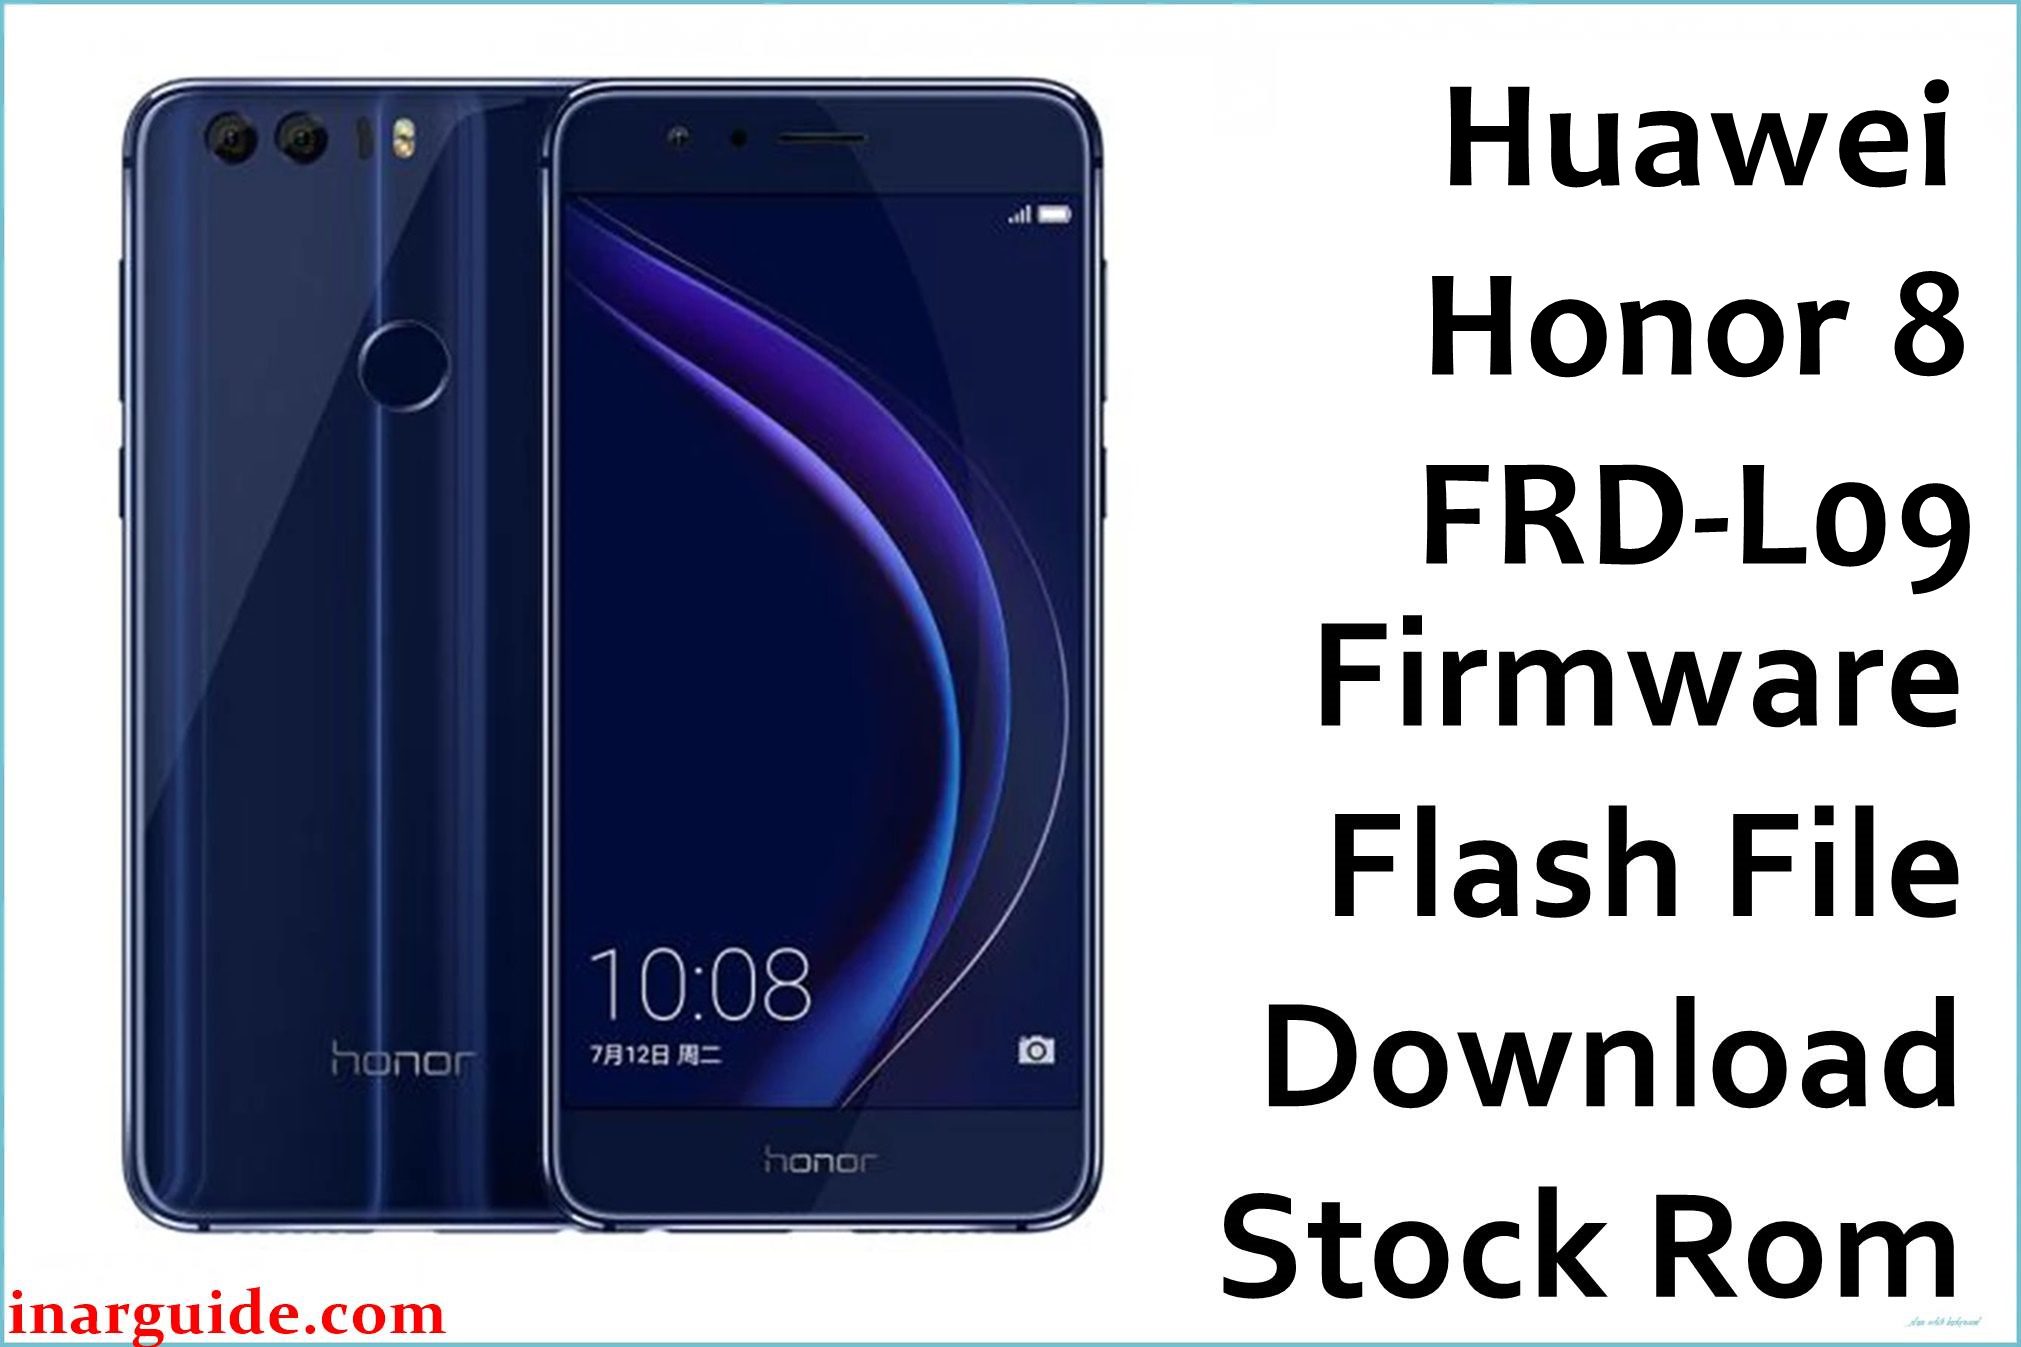 Huawei Honor 8 FRD L09